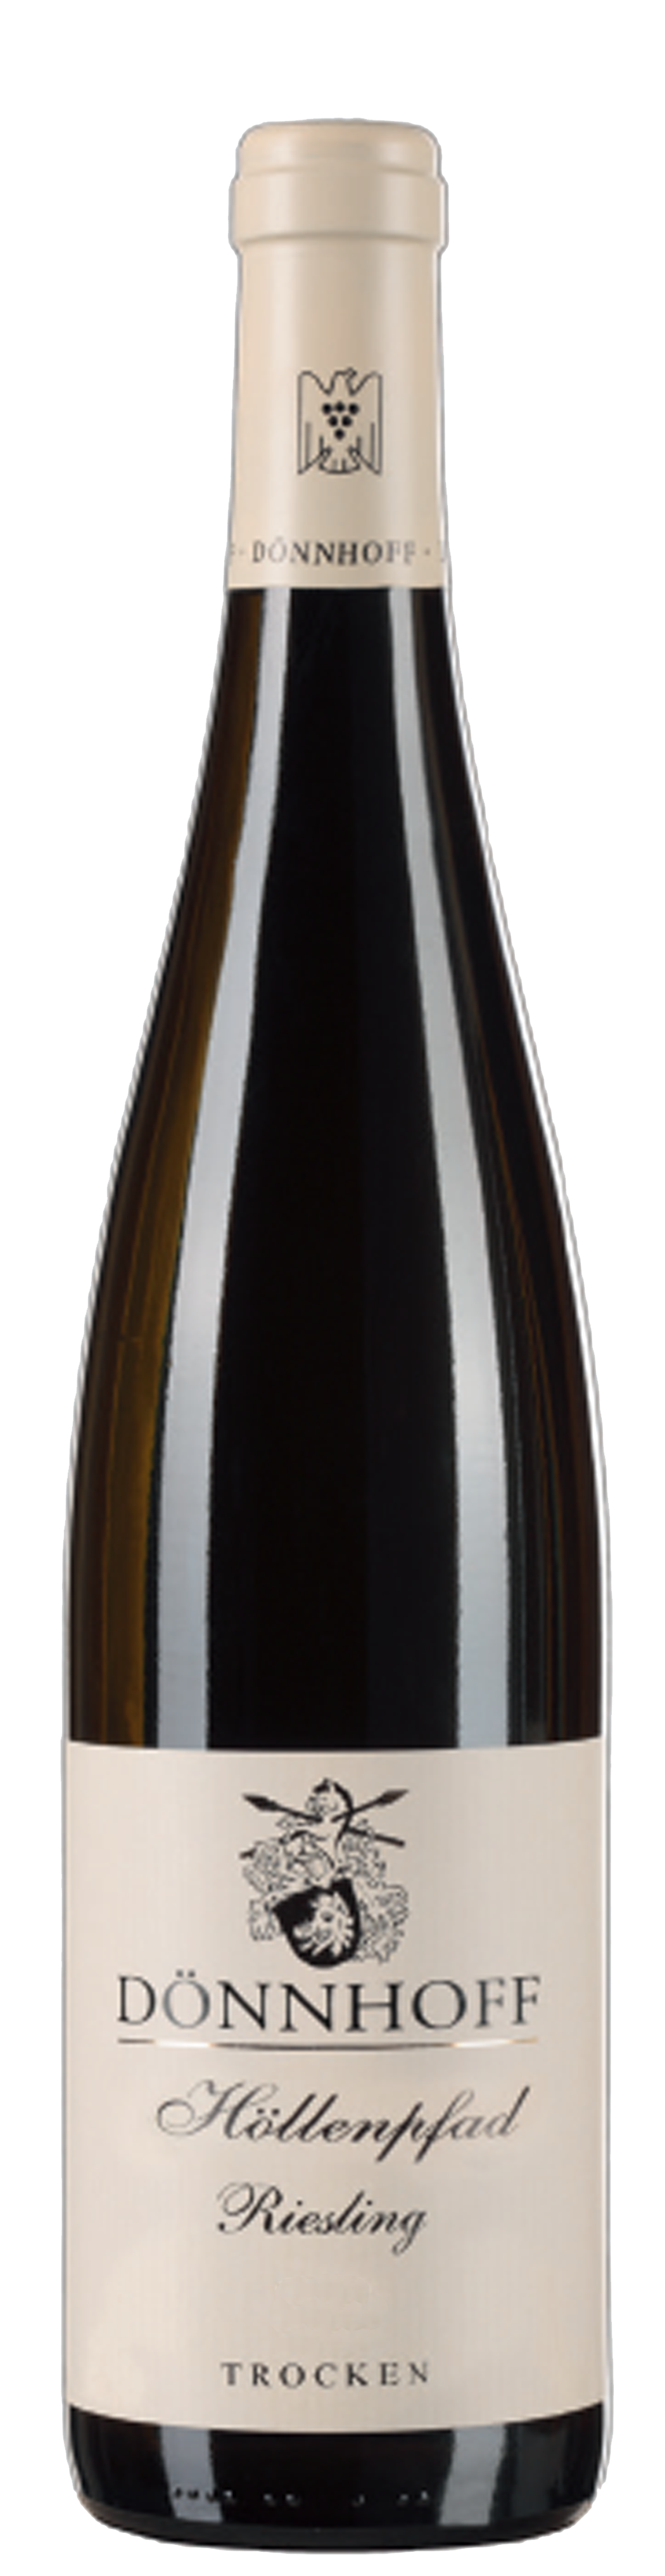 Bottle shot of 2014 Roxheimer Hollenpfad Riesling